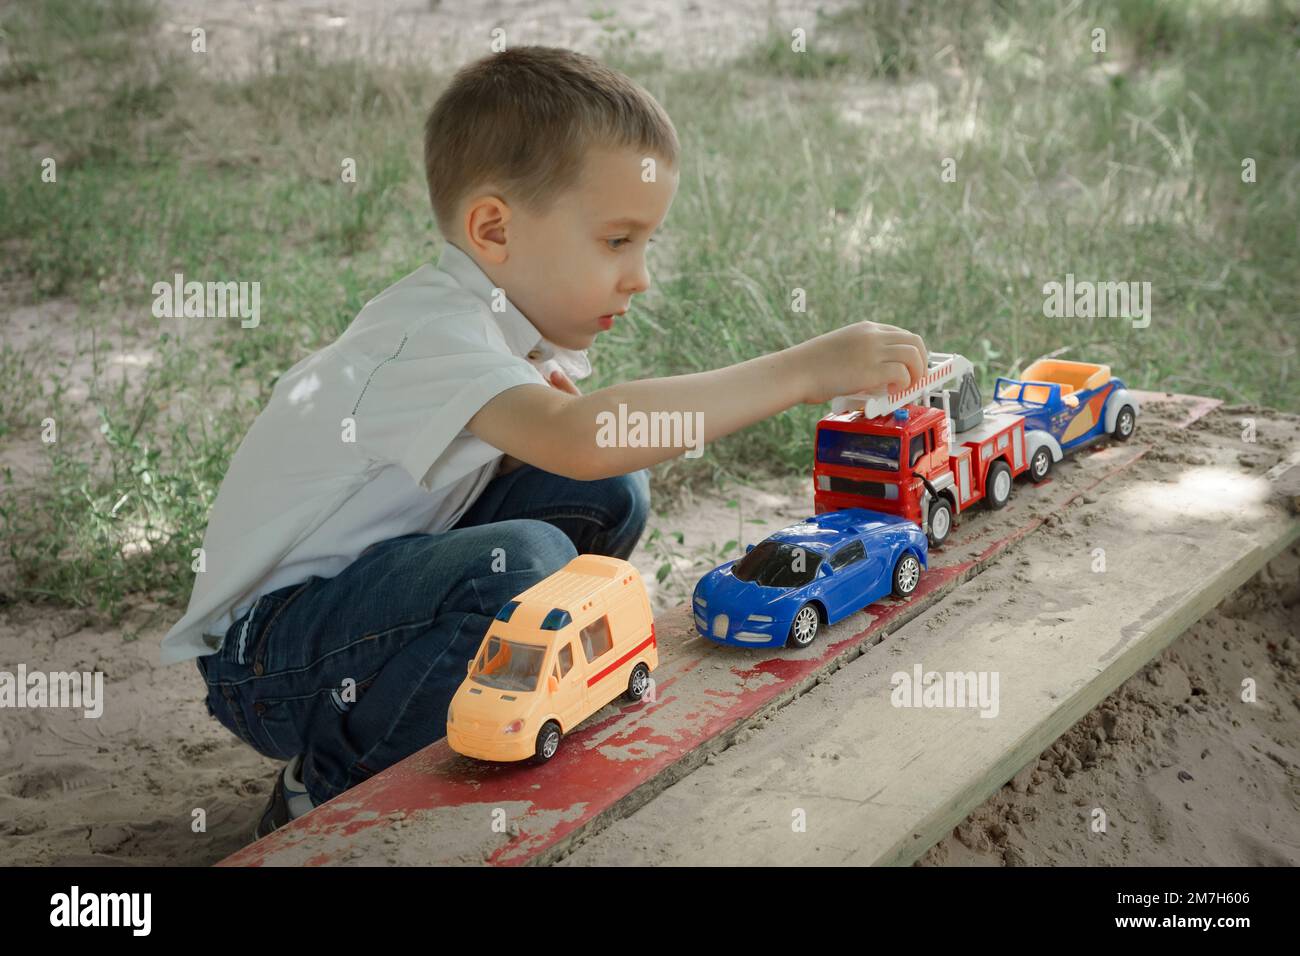 Un petit garçon joue avec des voitures jouets sur une aire de jeux extérieure Banque D'Images